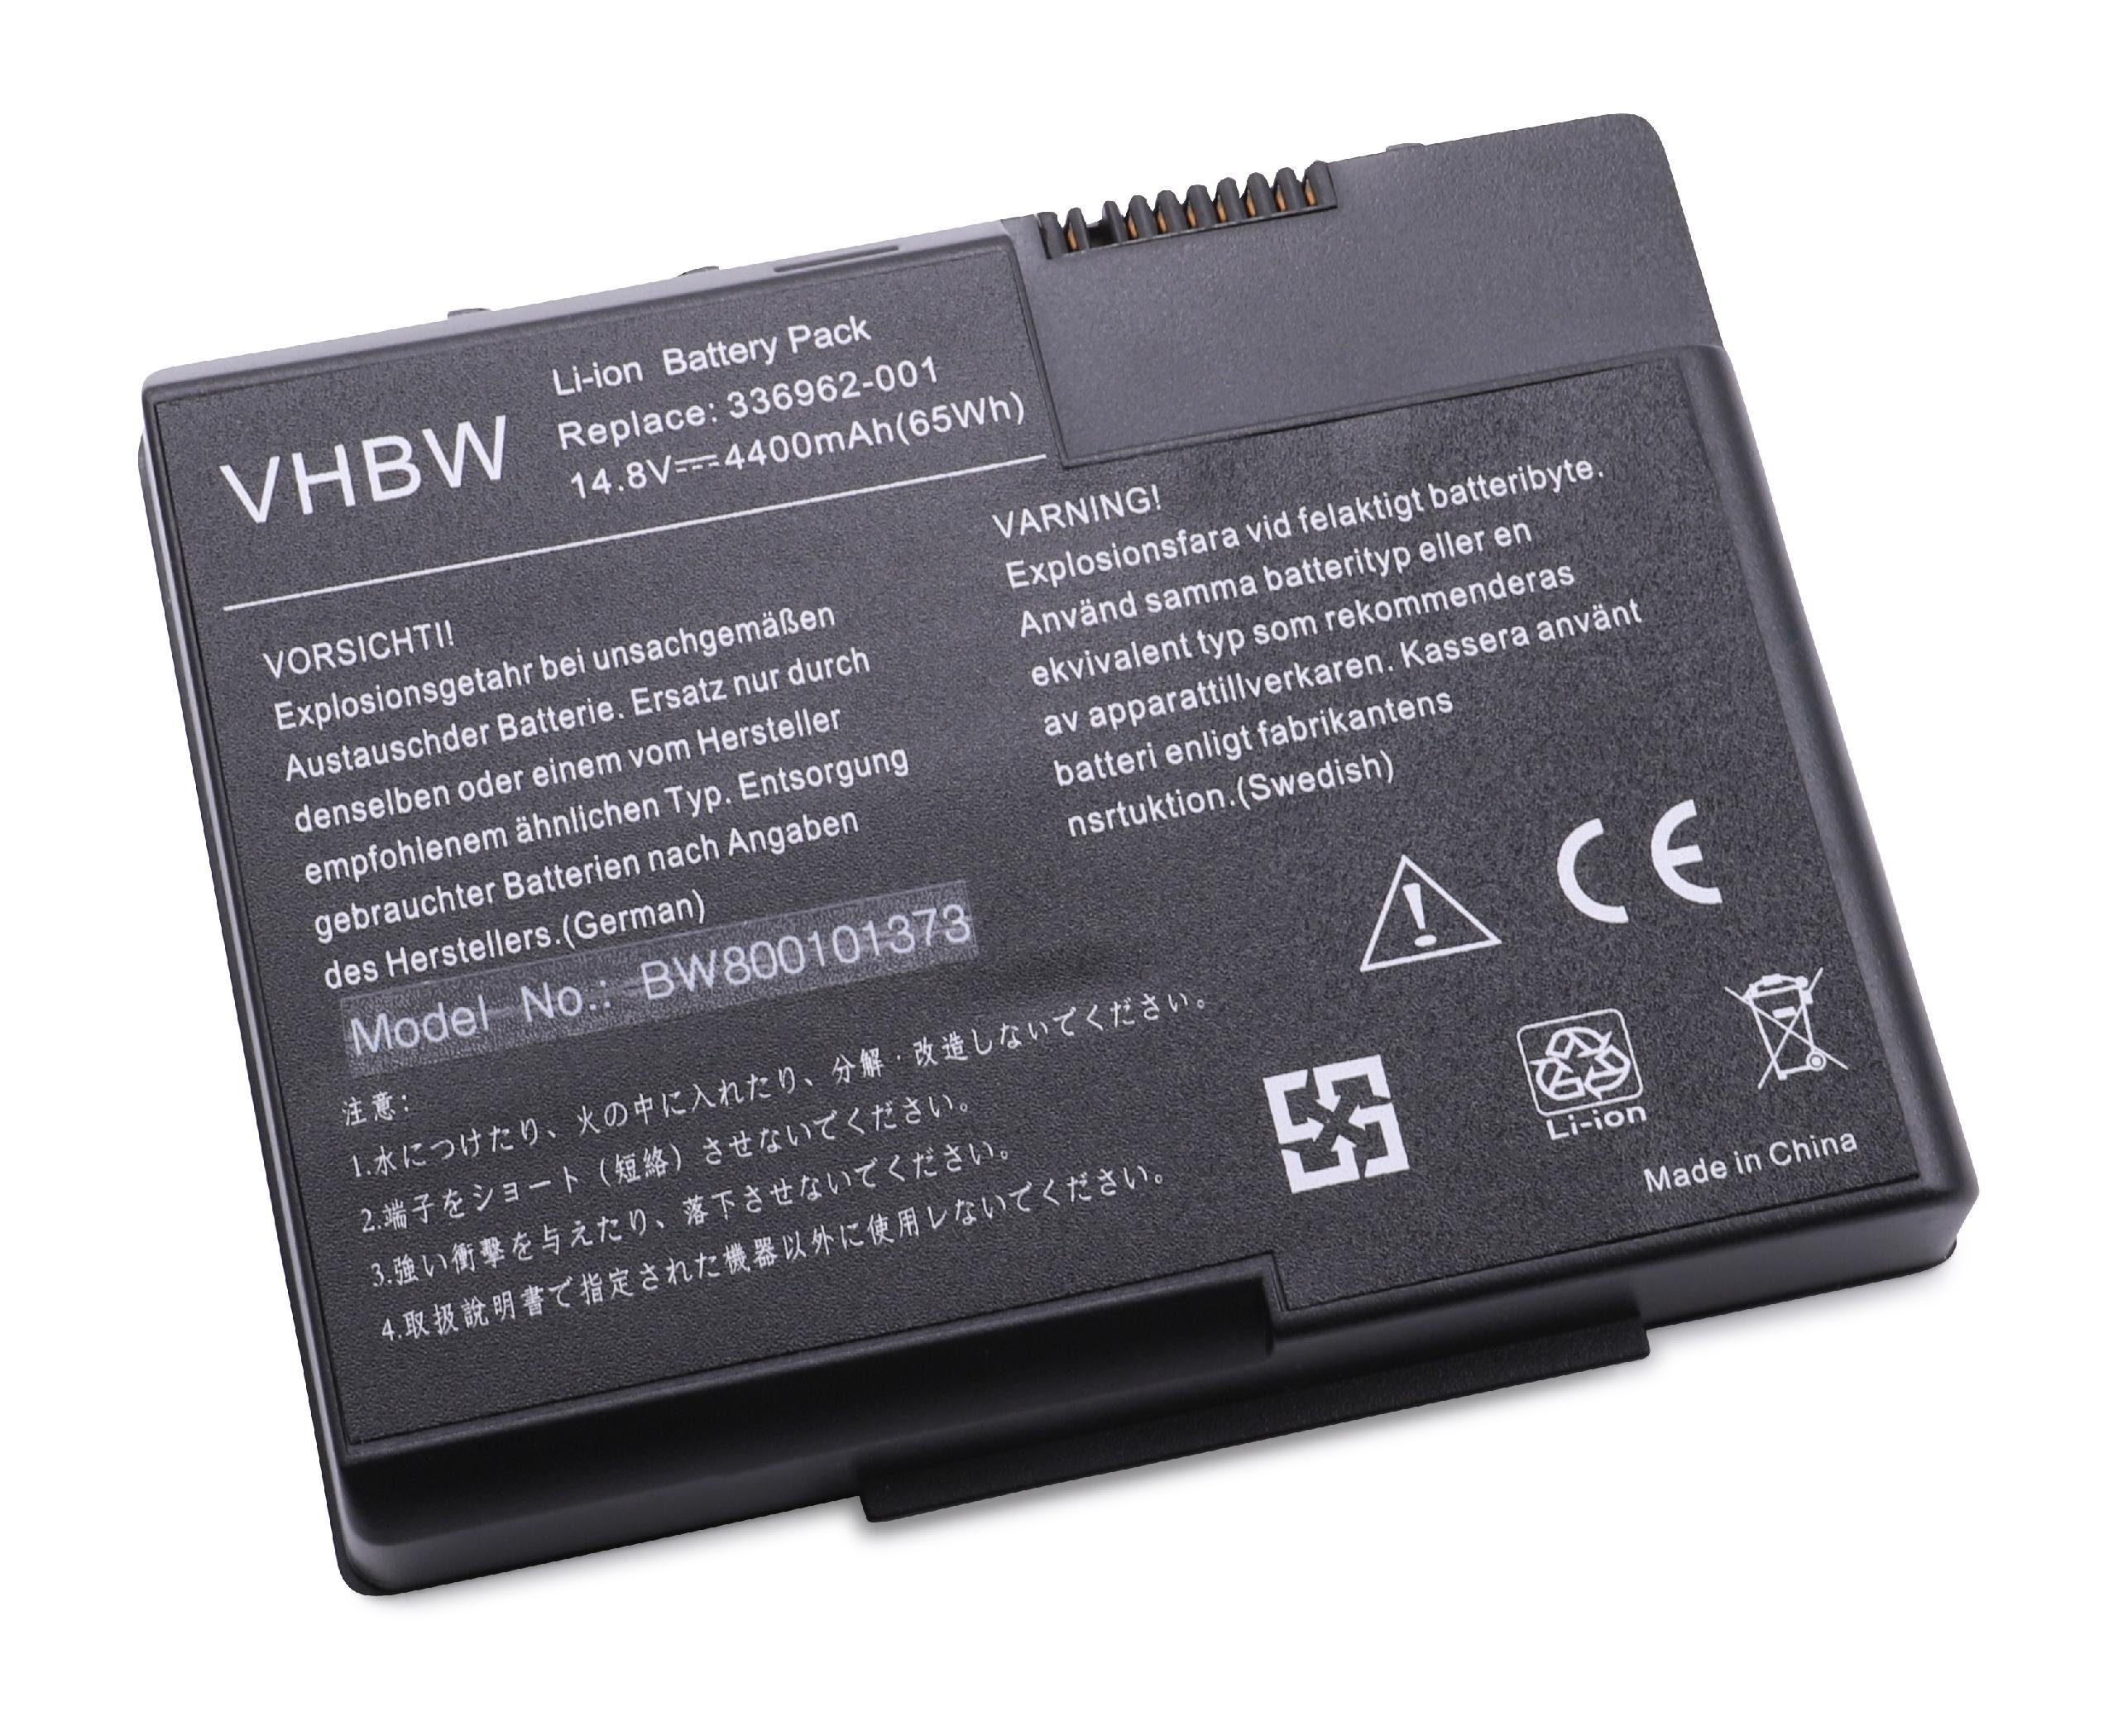 vhbw passend für HP Pavilion zt3017WM (DM781A), zt3017WM (DM781AR), Laptop-Akku 4400 mAh | Notebook-Akkus